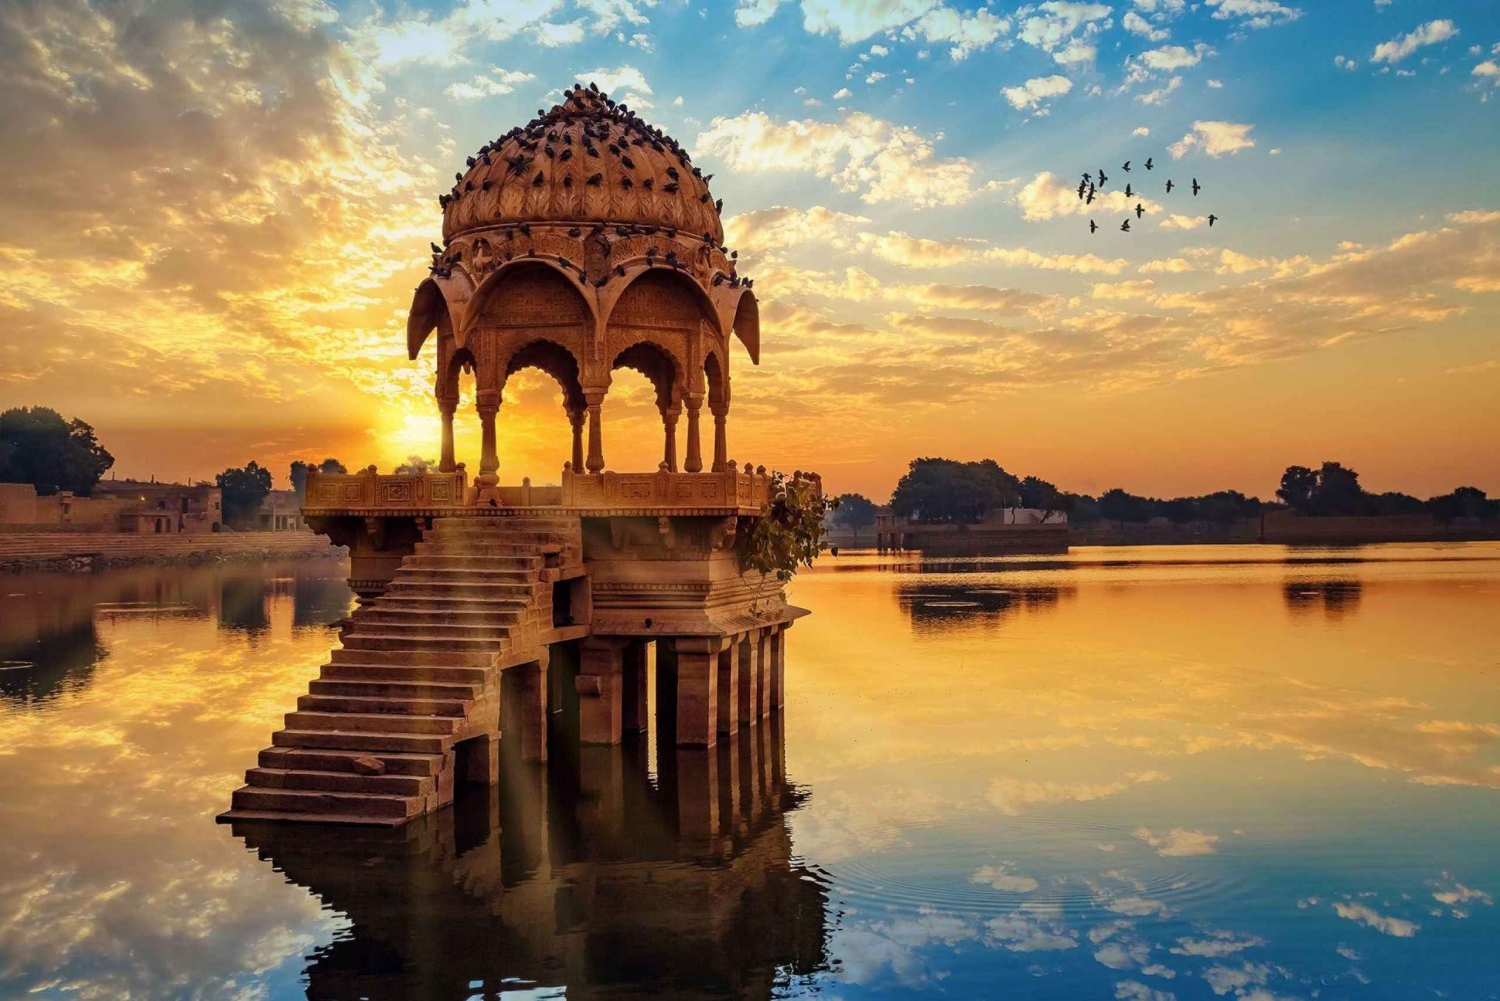 Reels & Snaps med de bedste steder til fotografering i Jaisalmer